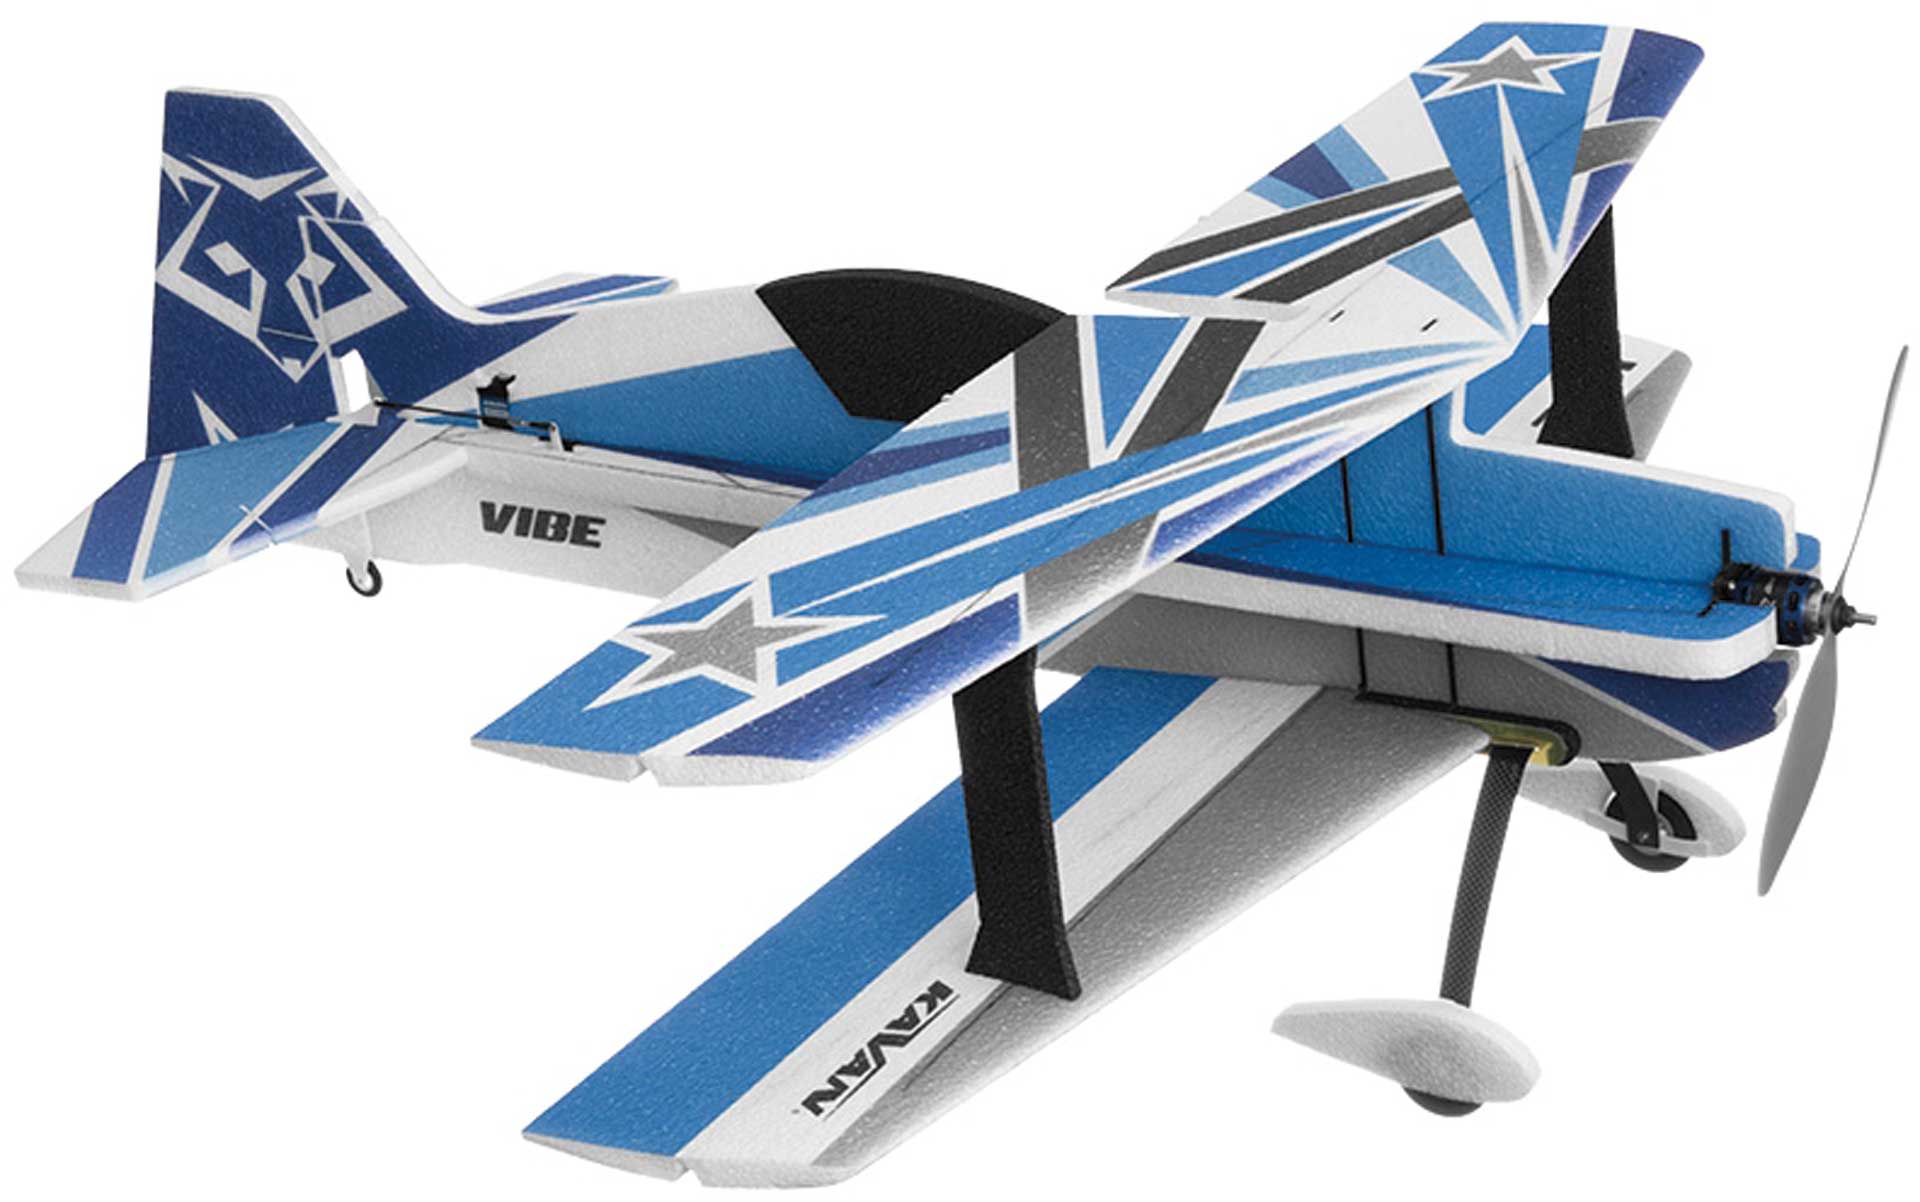 KAVAN VIBE Bleu 3D Voltige-Parc-Flyer biplan en EPP